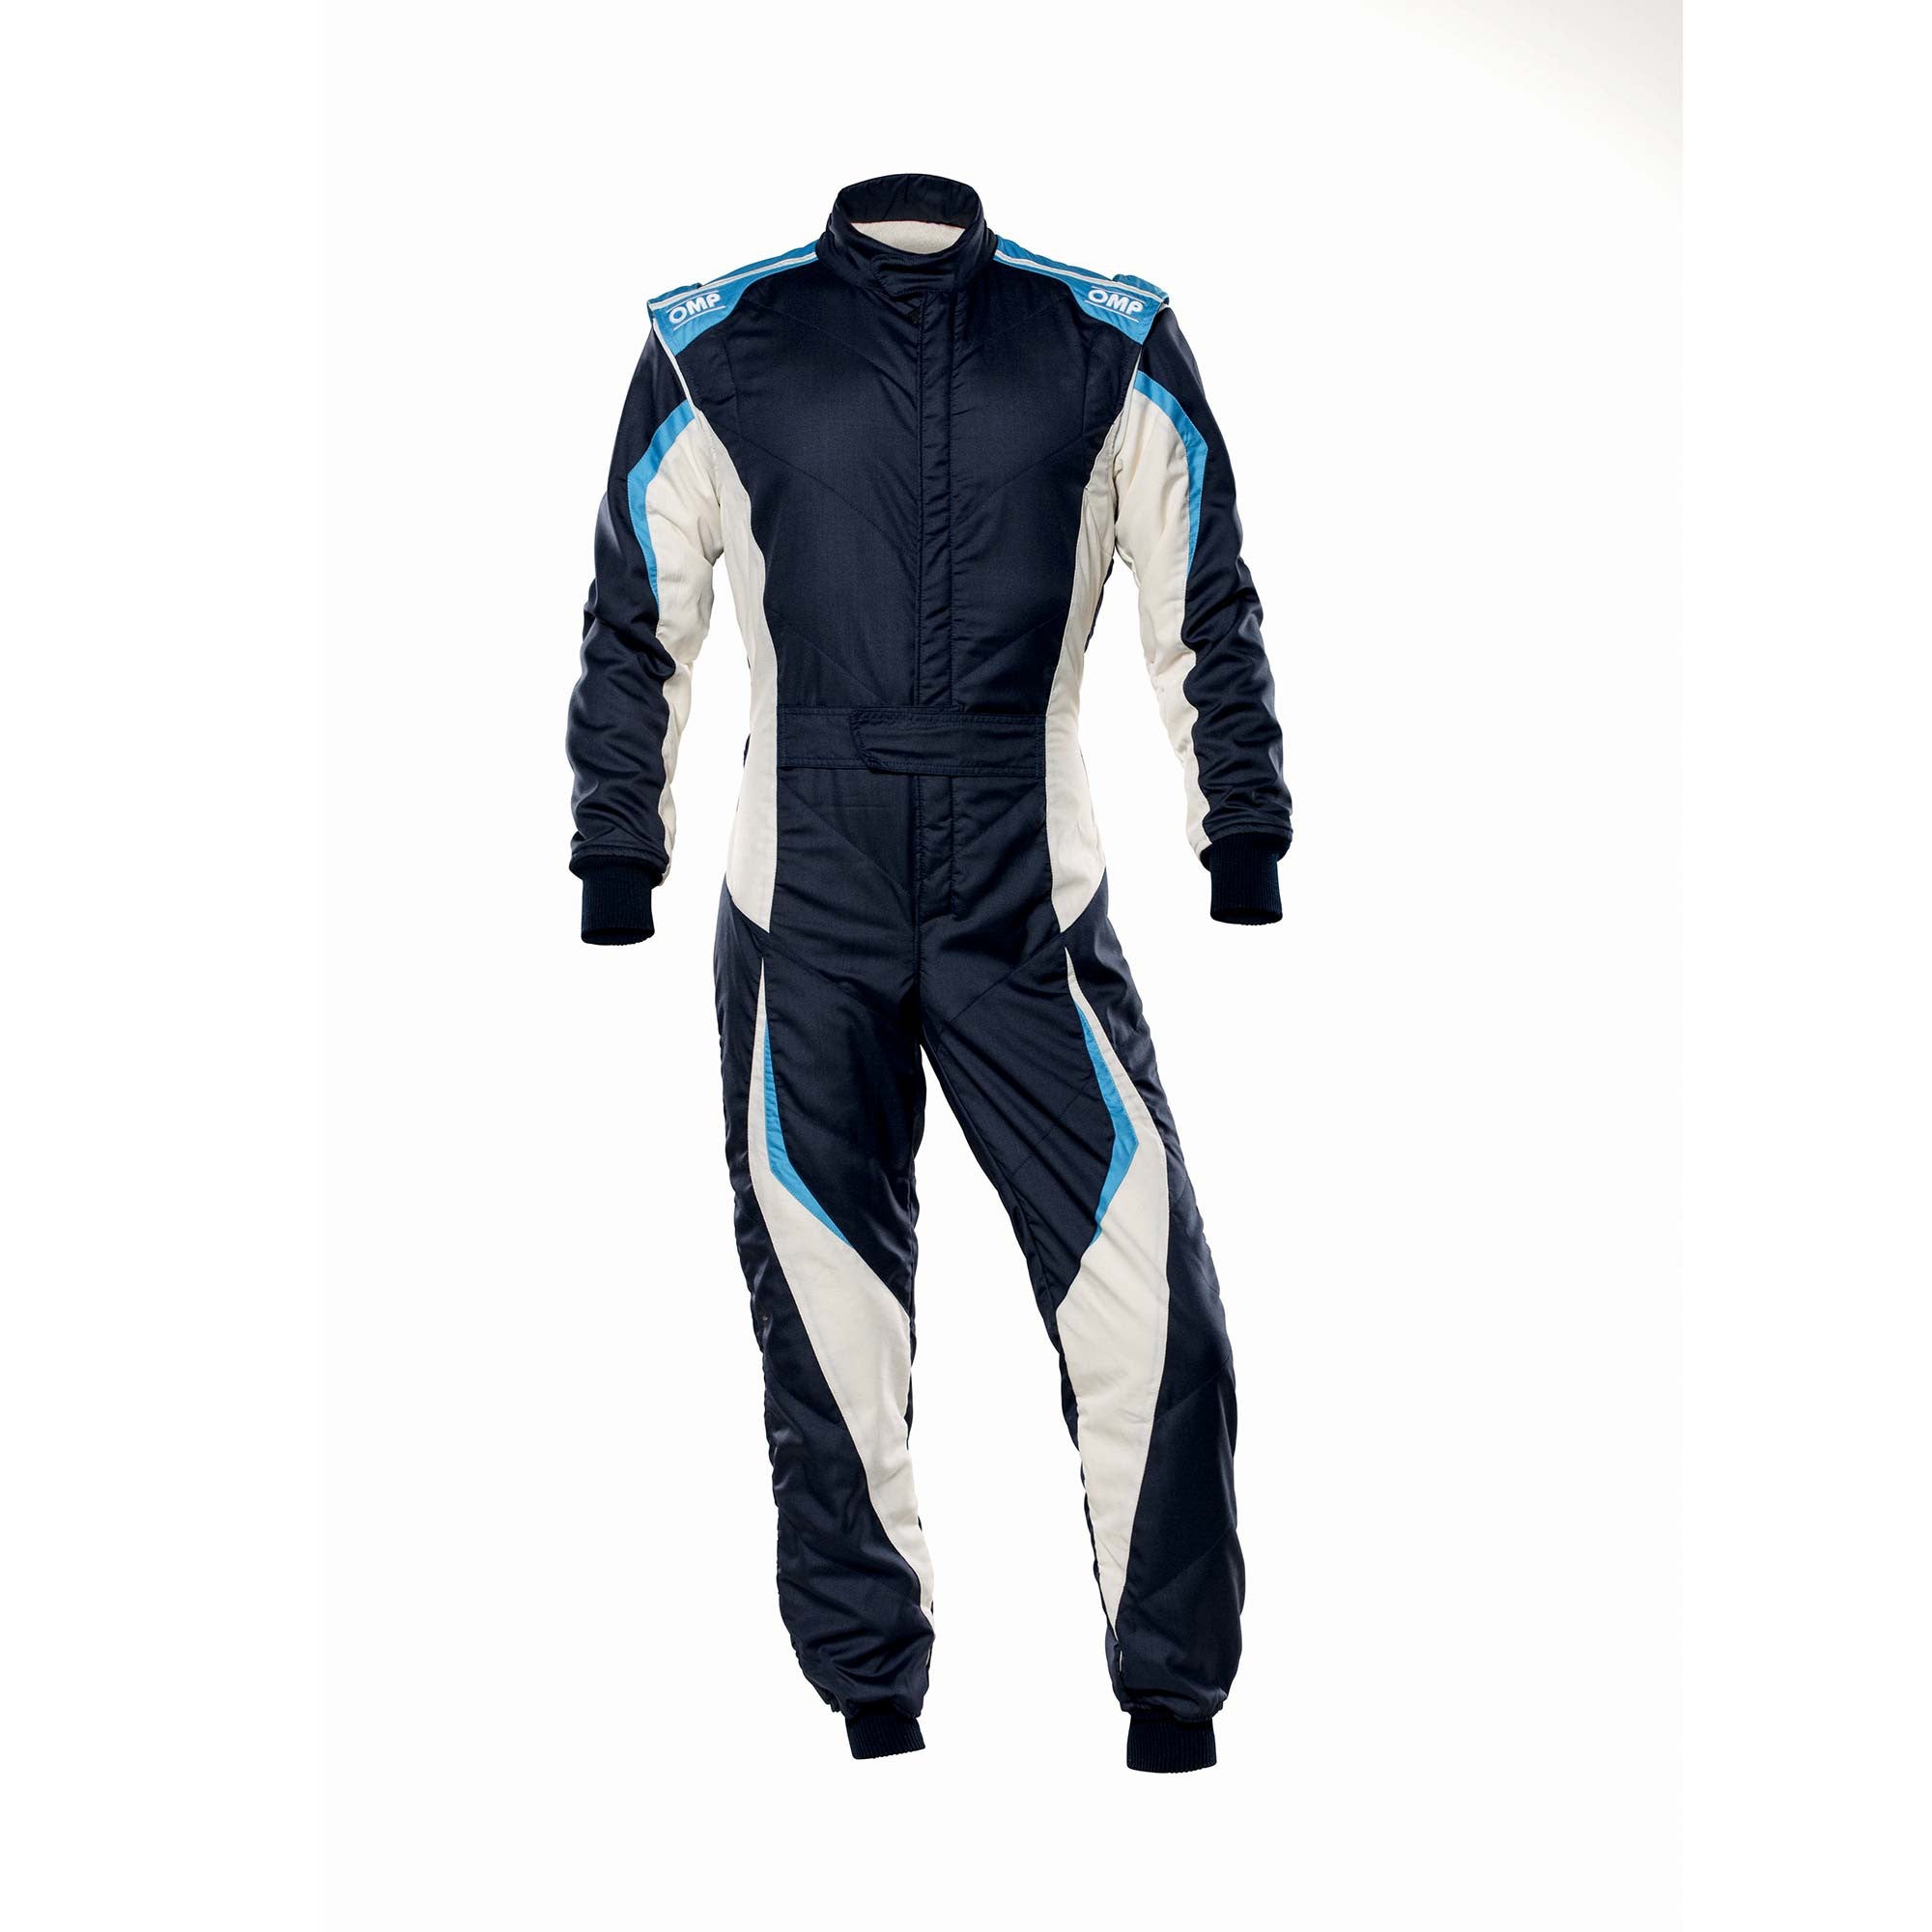 OMP IA0-1859-B01-246-44 Racing suit TECNICA EVO MY2021, FIA 8856-2018, navy blue/white/grey/cyan, size 44 Photo-0 